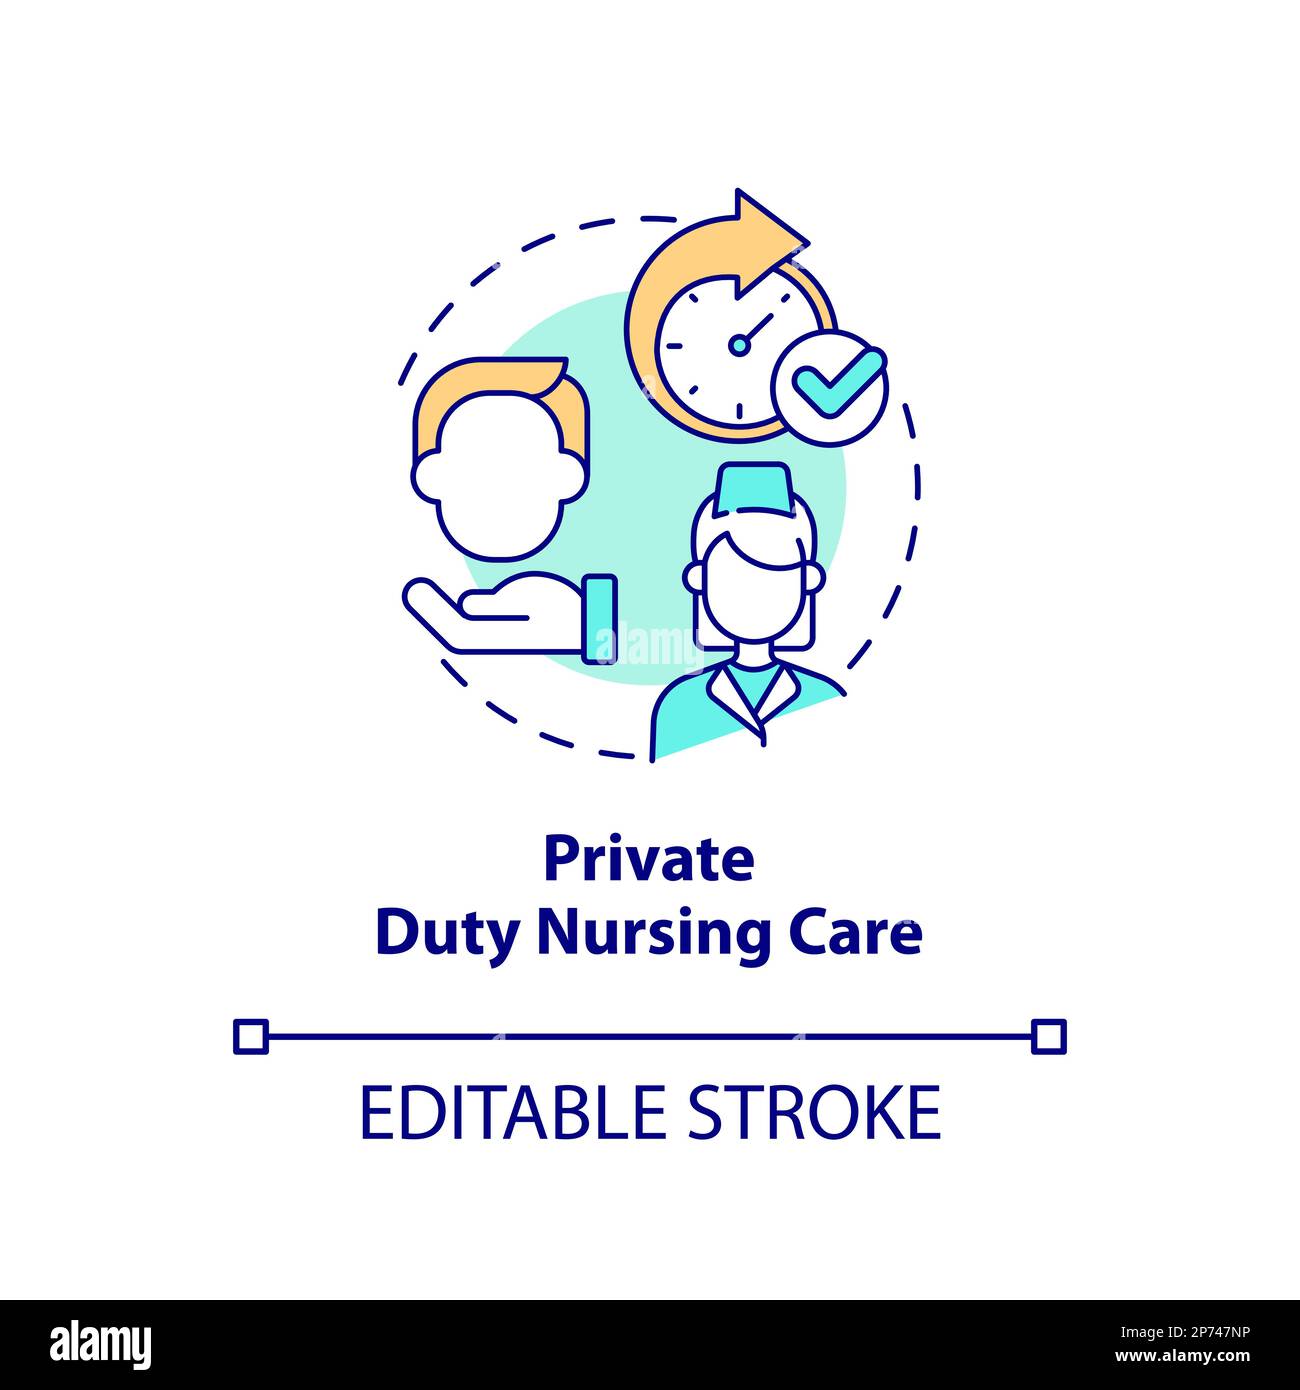 Private duty nursing care concept icon Stock Vector